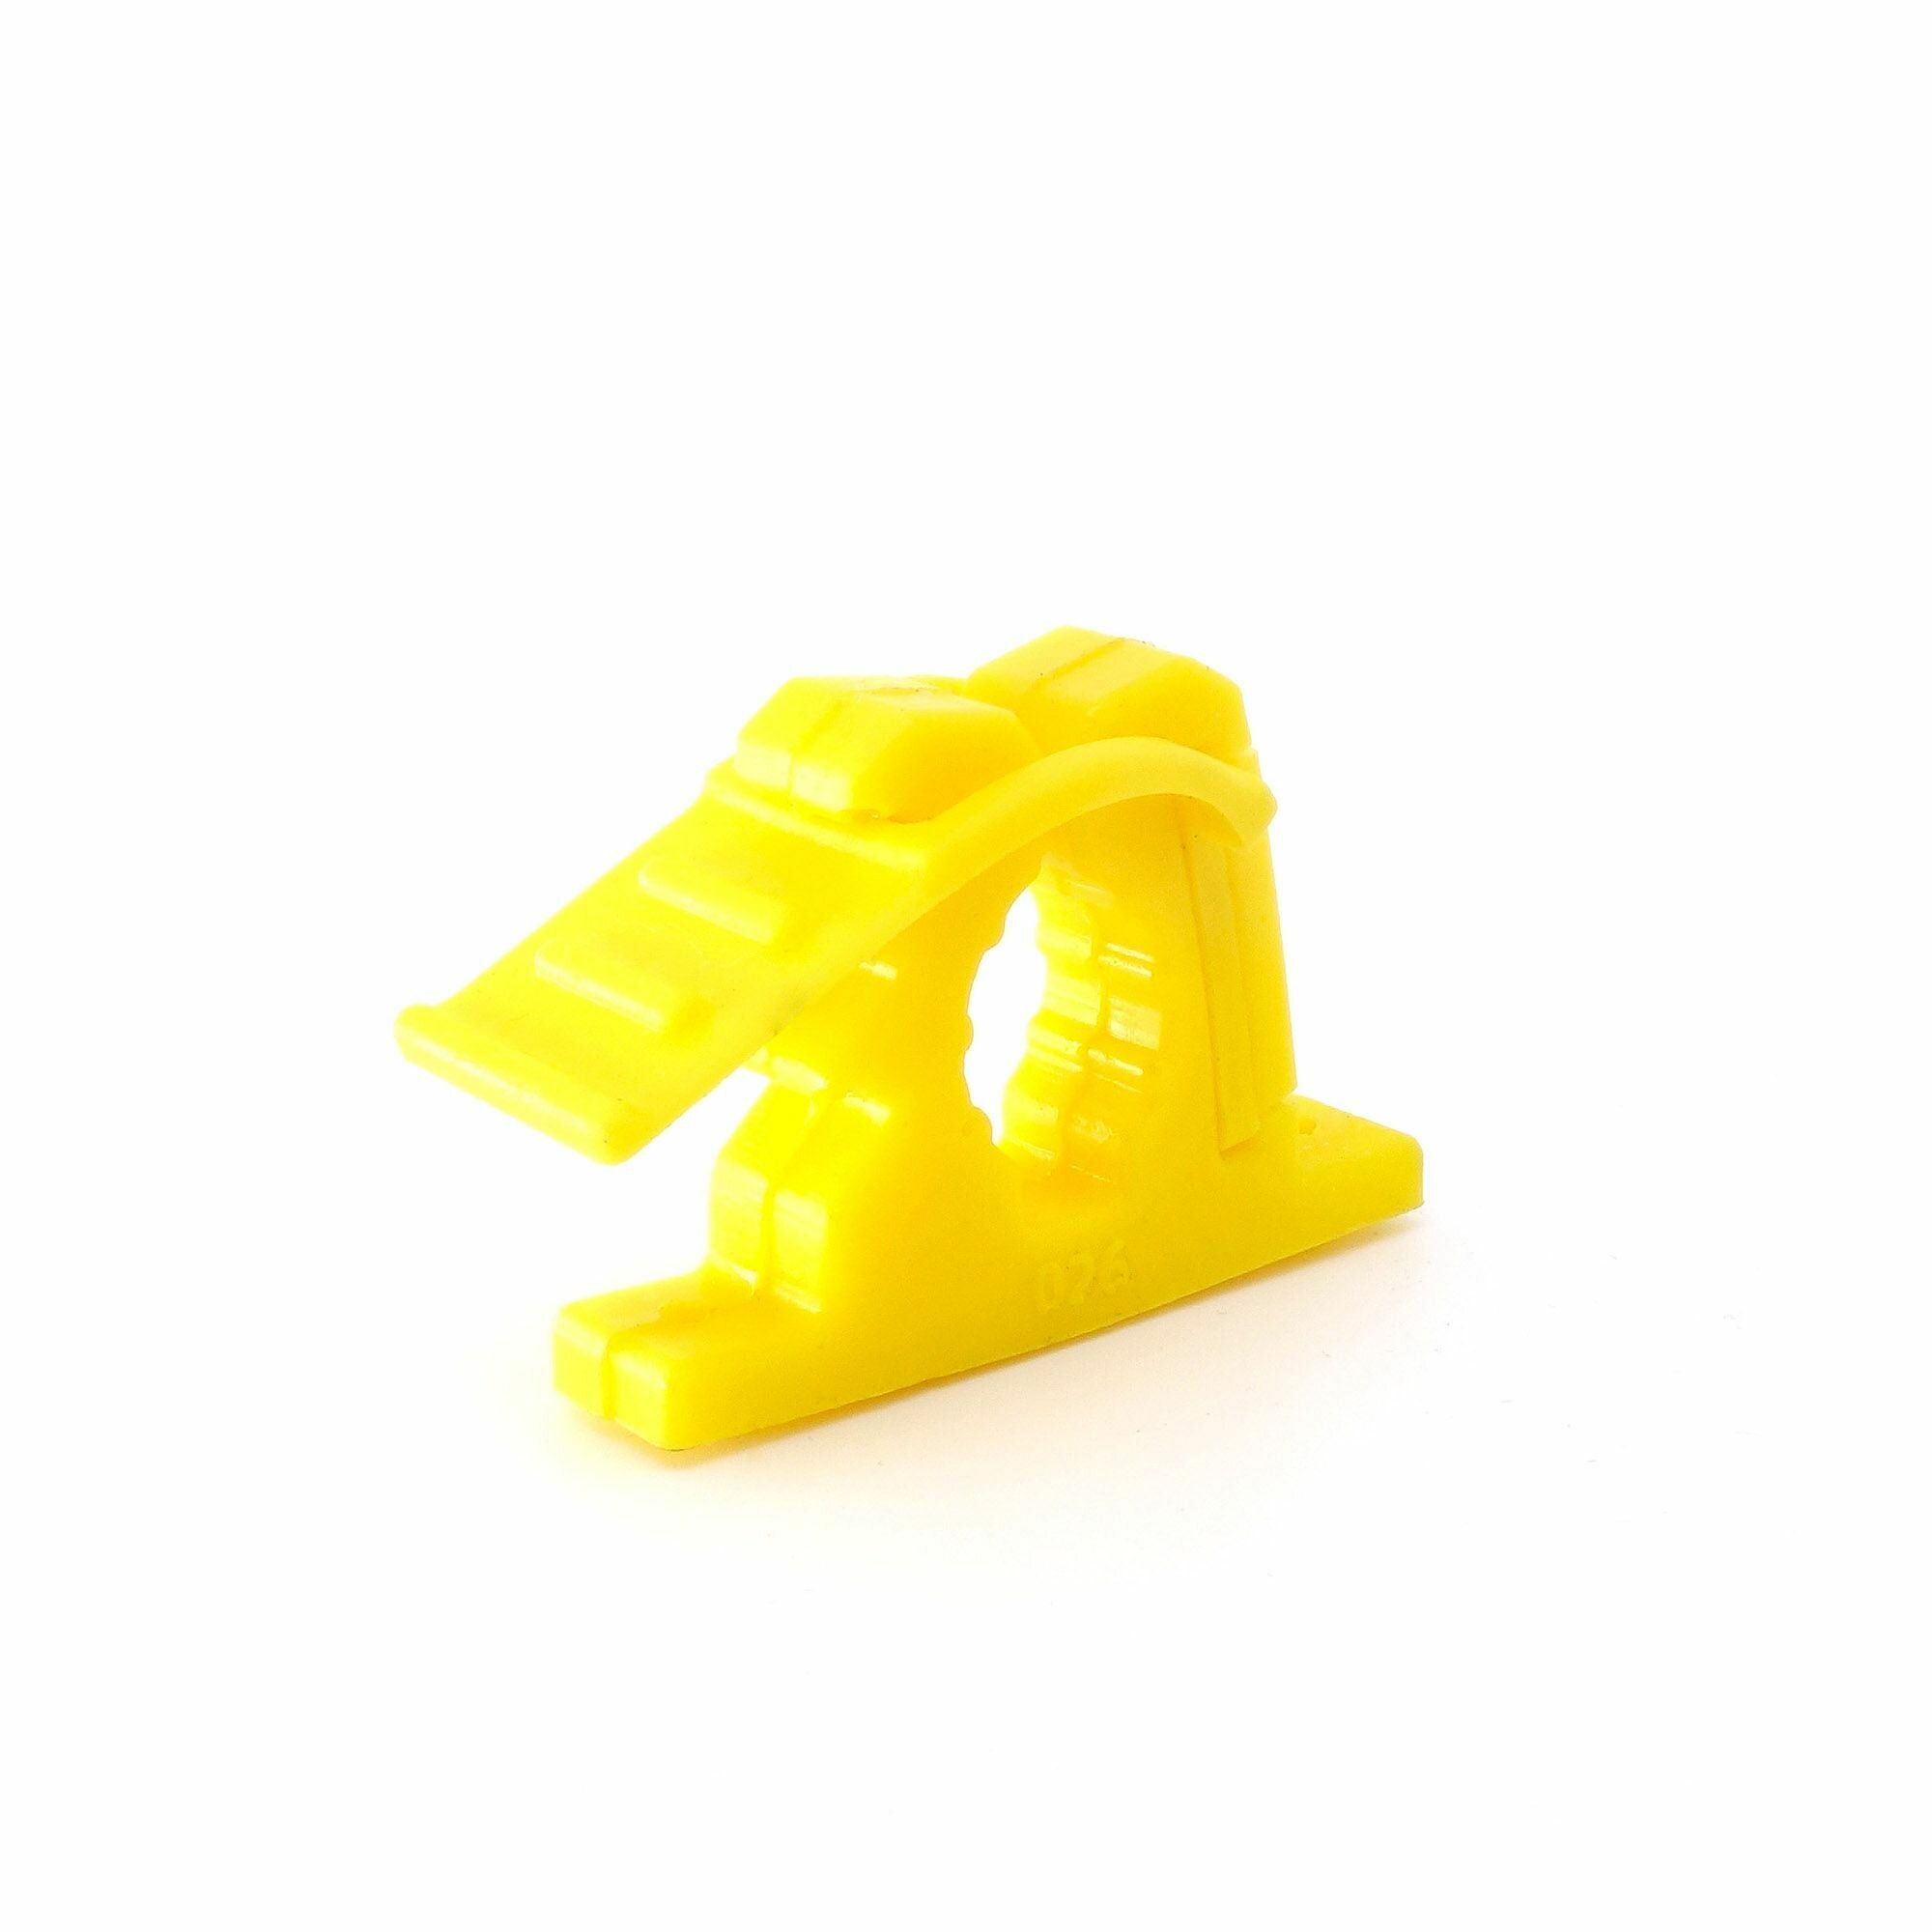 Комплект полиуретанового крепежа Contrforma 026 из 4  желтый (для лопаты)